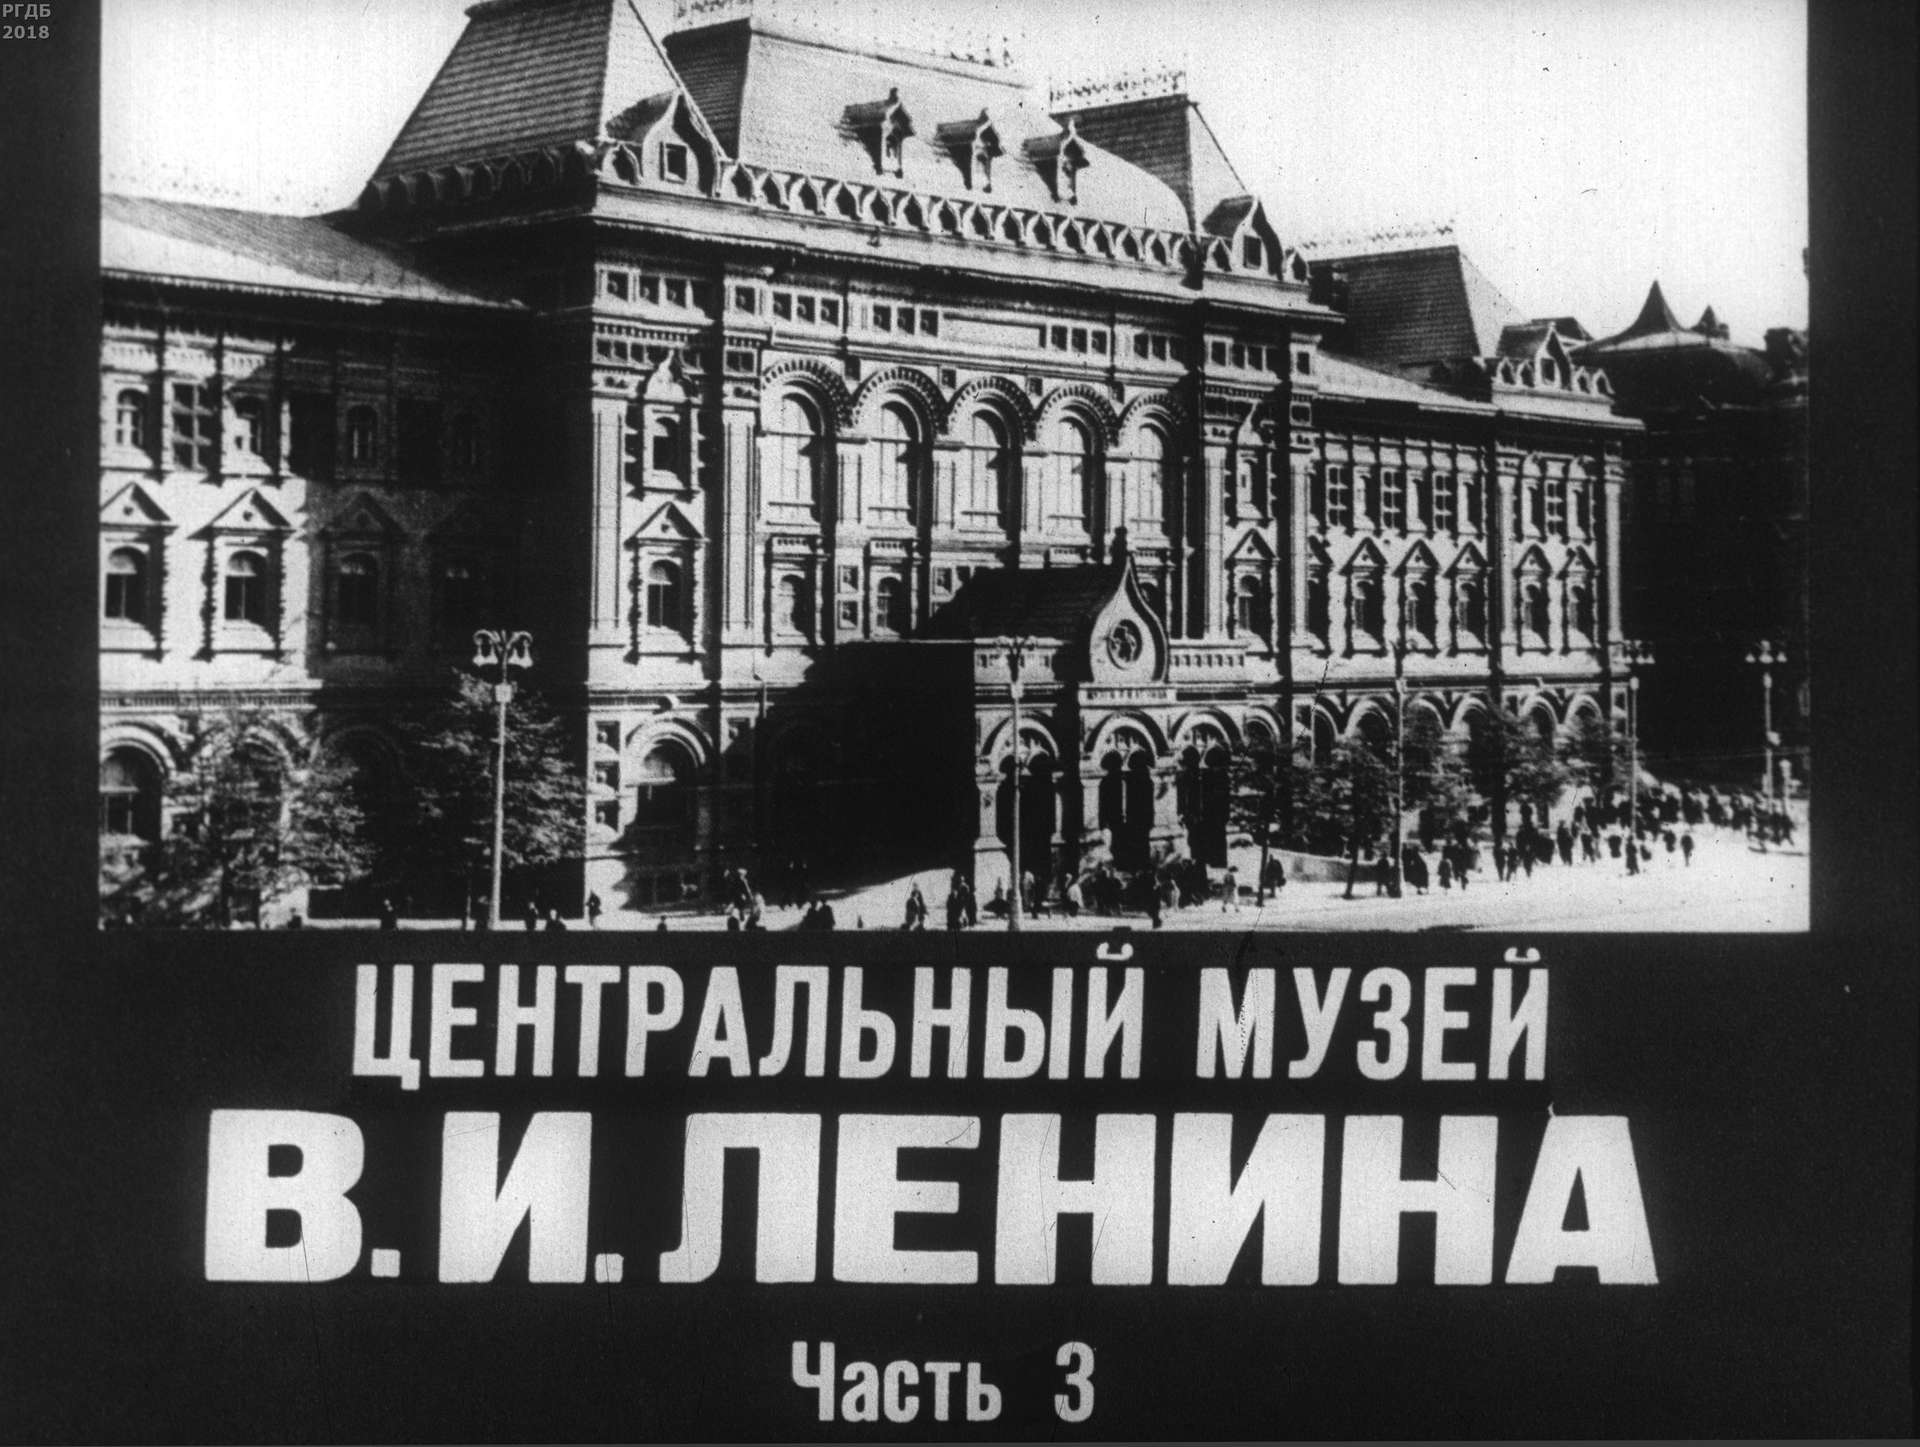 Центральный музей В. И. Ленина. Ч. 3